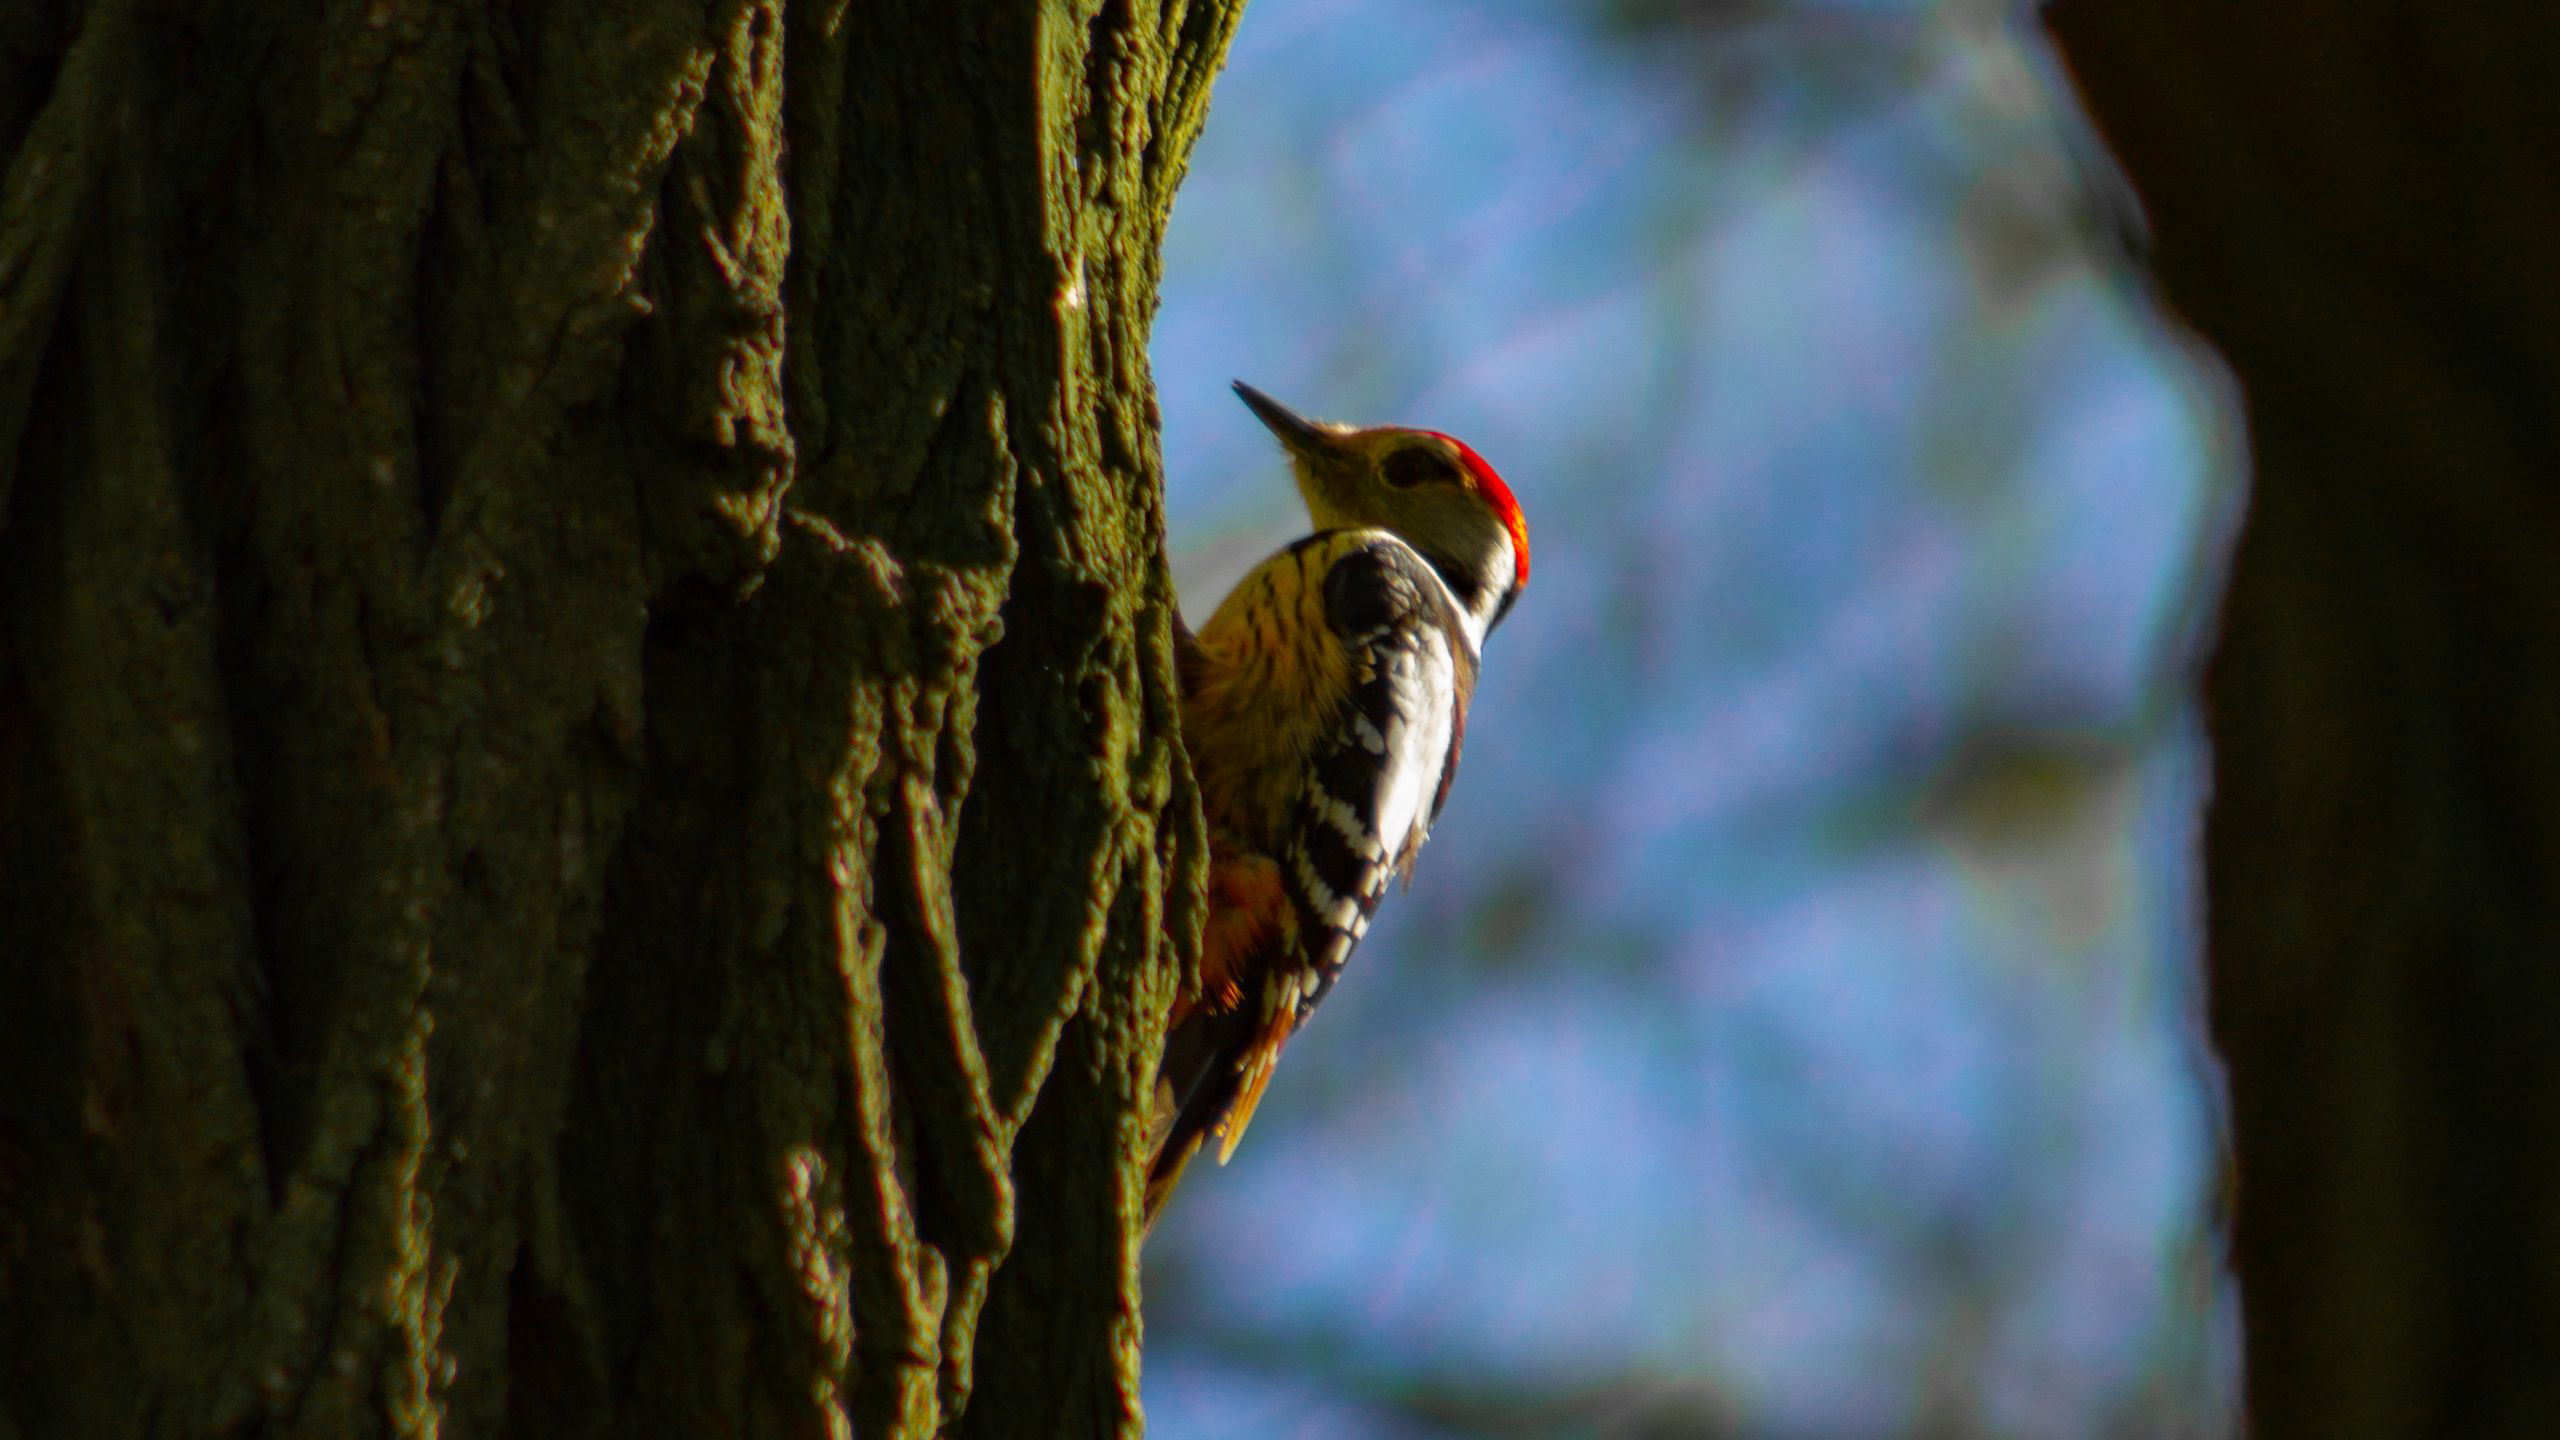 White Black Redhead Woodpecker Bird Is Standing On Tree Bark In Blur Wallpaper HD Birds